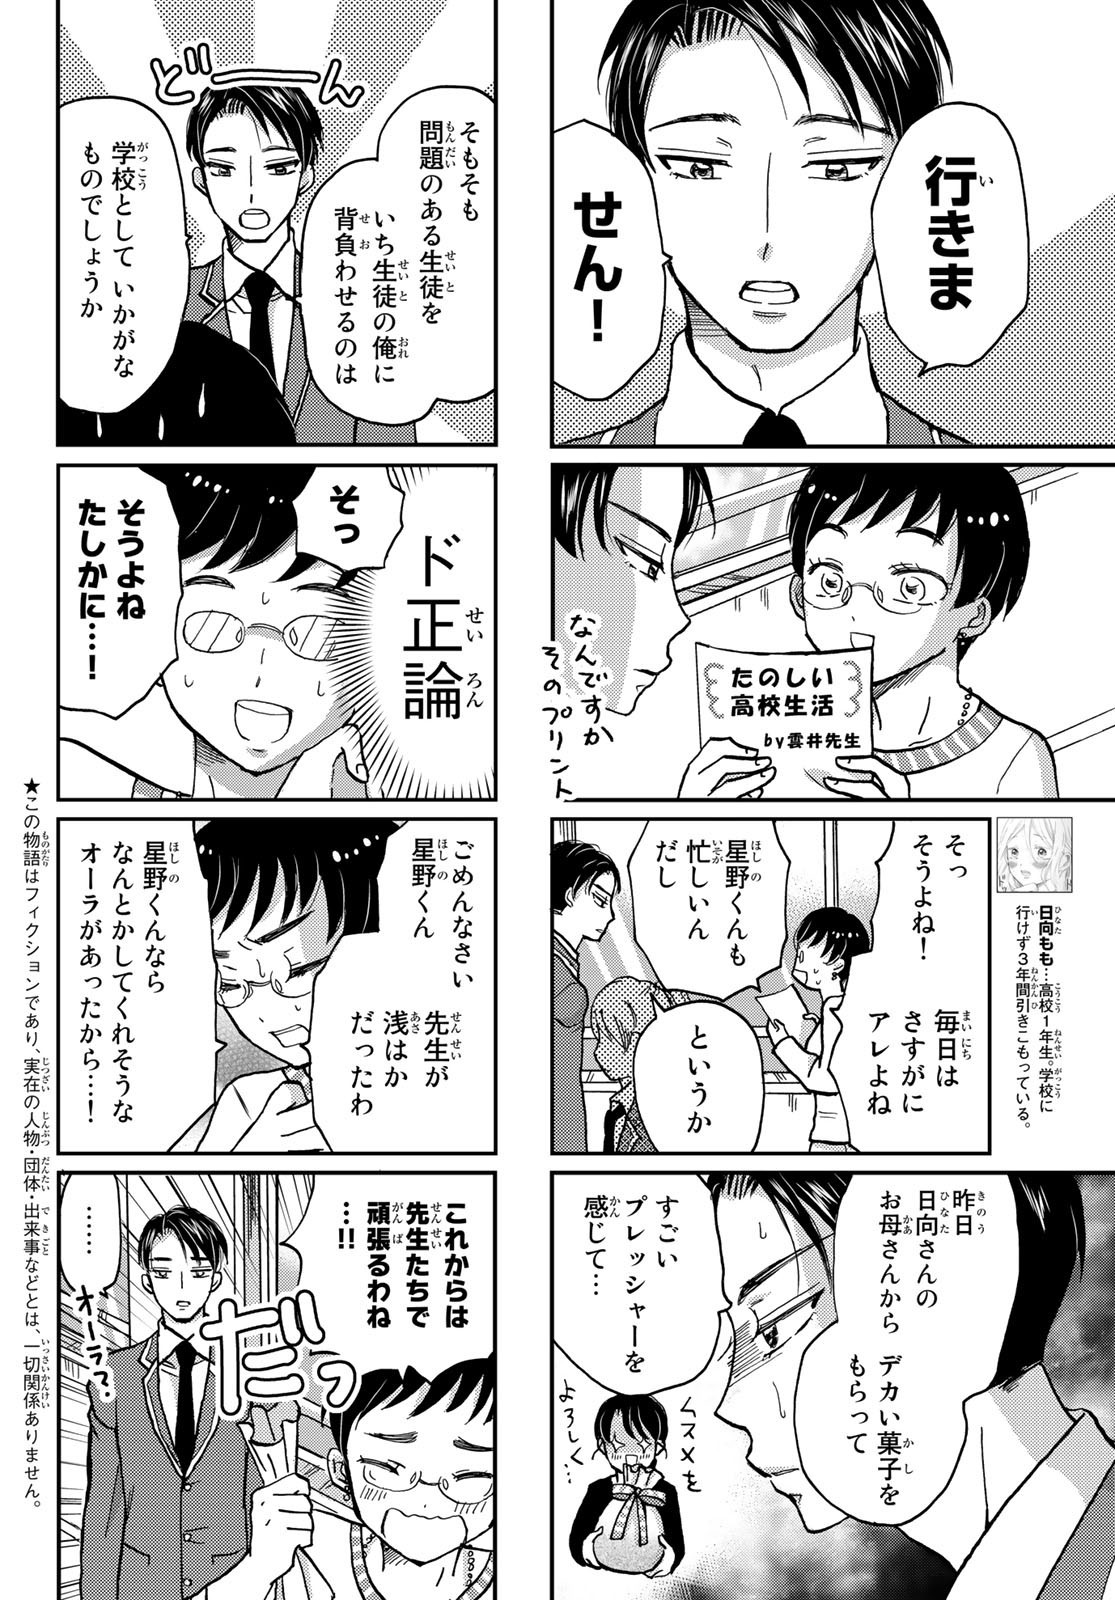 Hinata-san, Hoshino desu. - Chapter 003 - Page 2